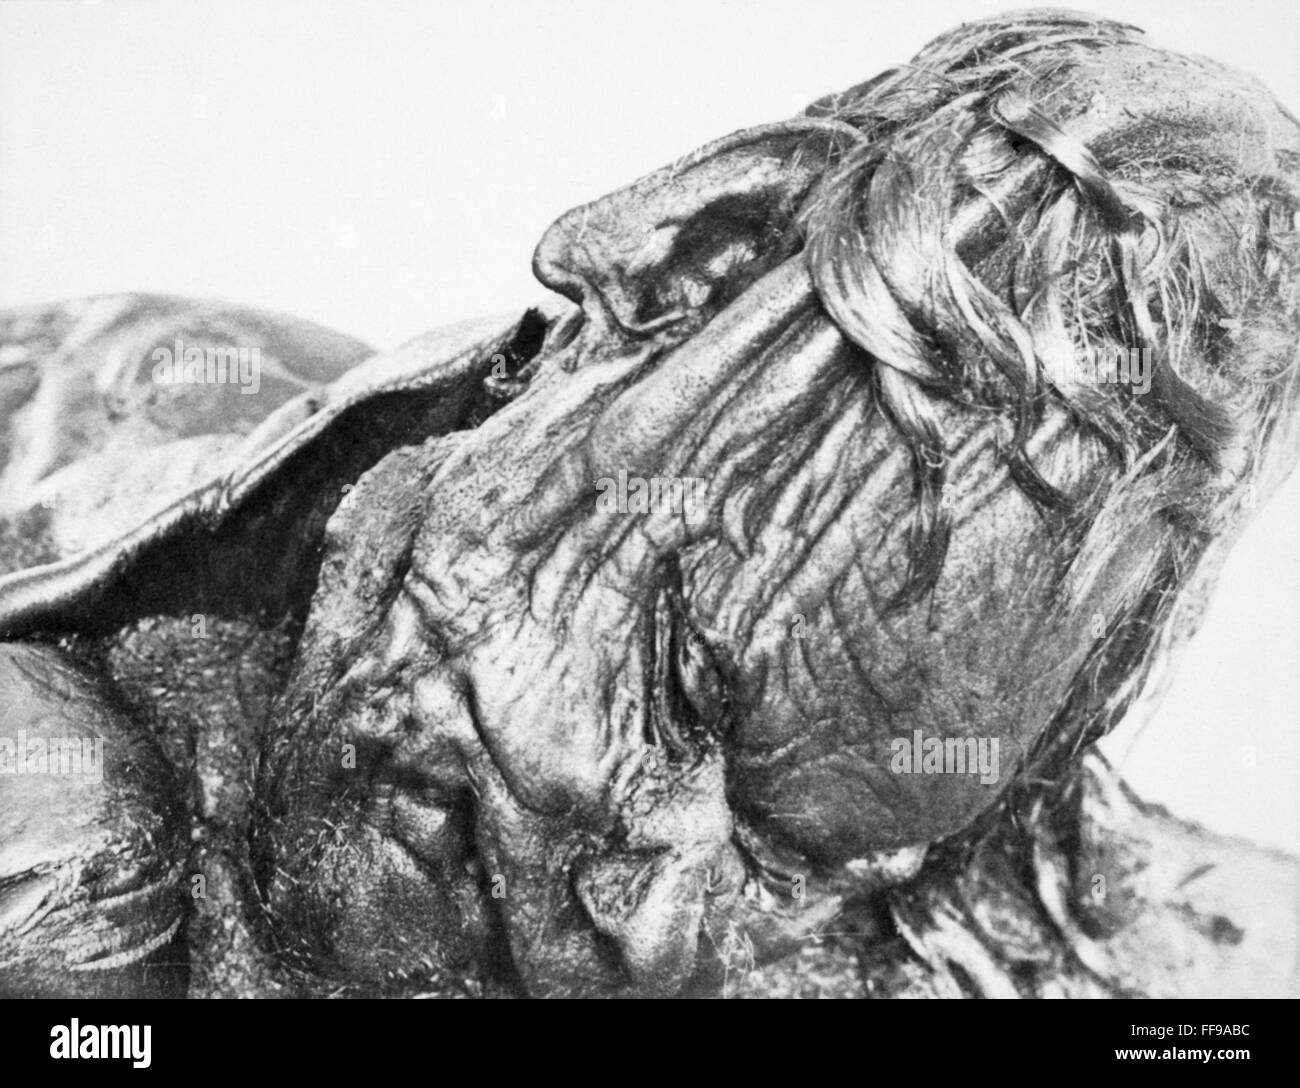 El hombre de la Edad de Hierro, c300 A.D. /nel jefe de un hombre desde c300 A.D., encontrado en 1952, conservados en un pantano en Grauballe en el centro de Jutlandia, Dinamarca. Foto de stock